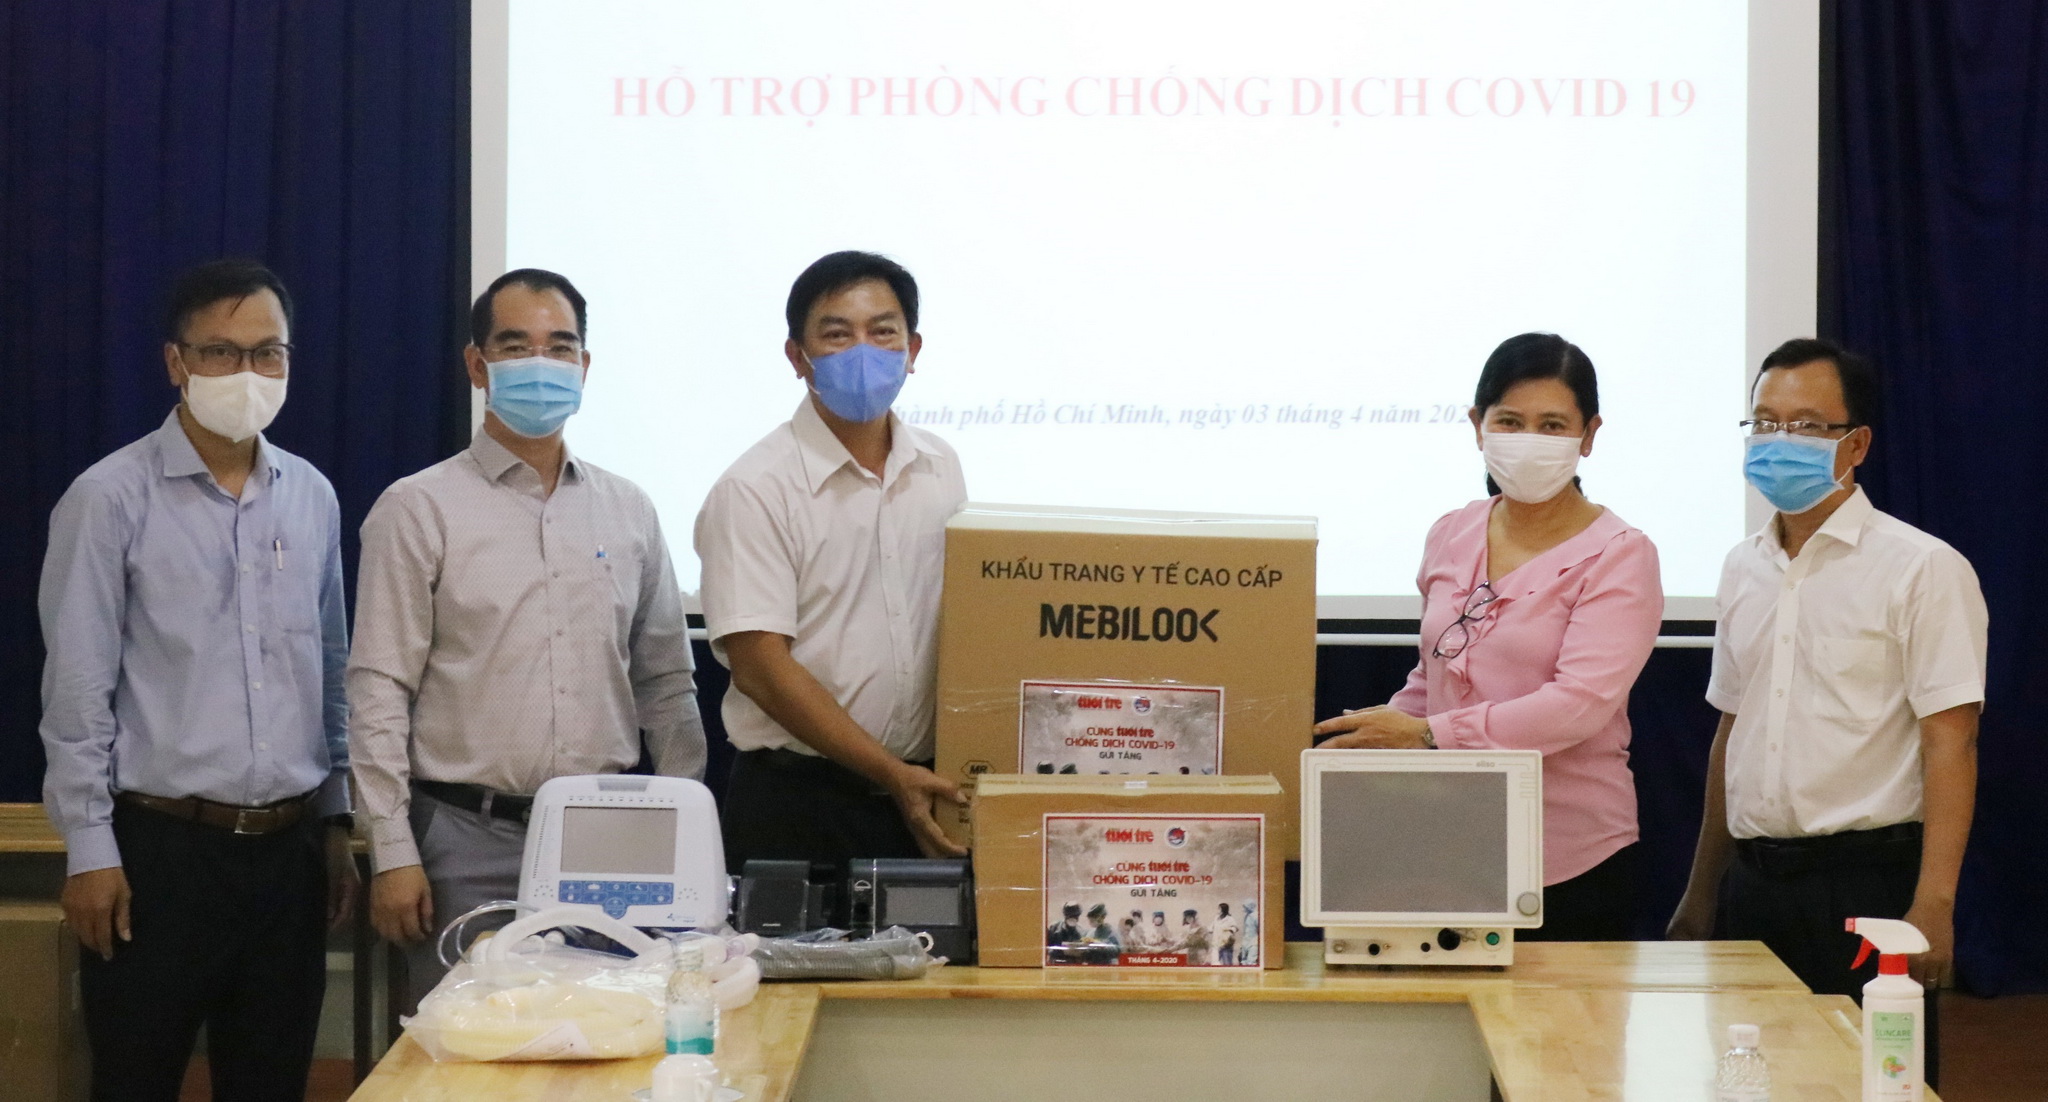 Đại diện Chương trình “Cùng Tuổi trẻ chống dịch COVID -19” trao tặng khẩu trang y tế và các phương tiện phòng dịch cho đại diện Sở Y tế Thành phố Hồ Chí Minh. (Ảnh: Đinh Hằng/TTXVN)